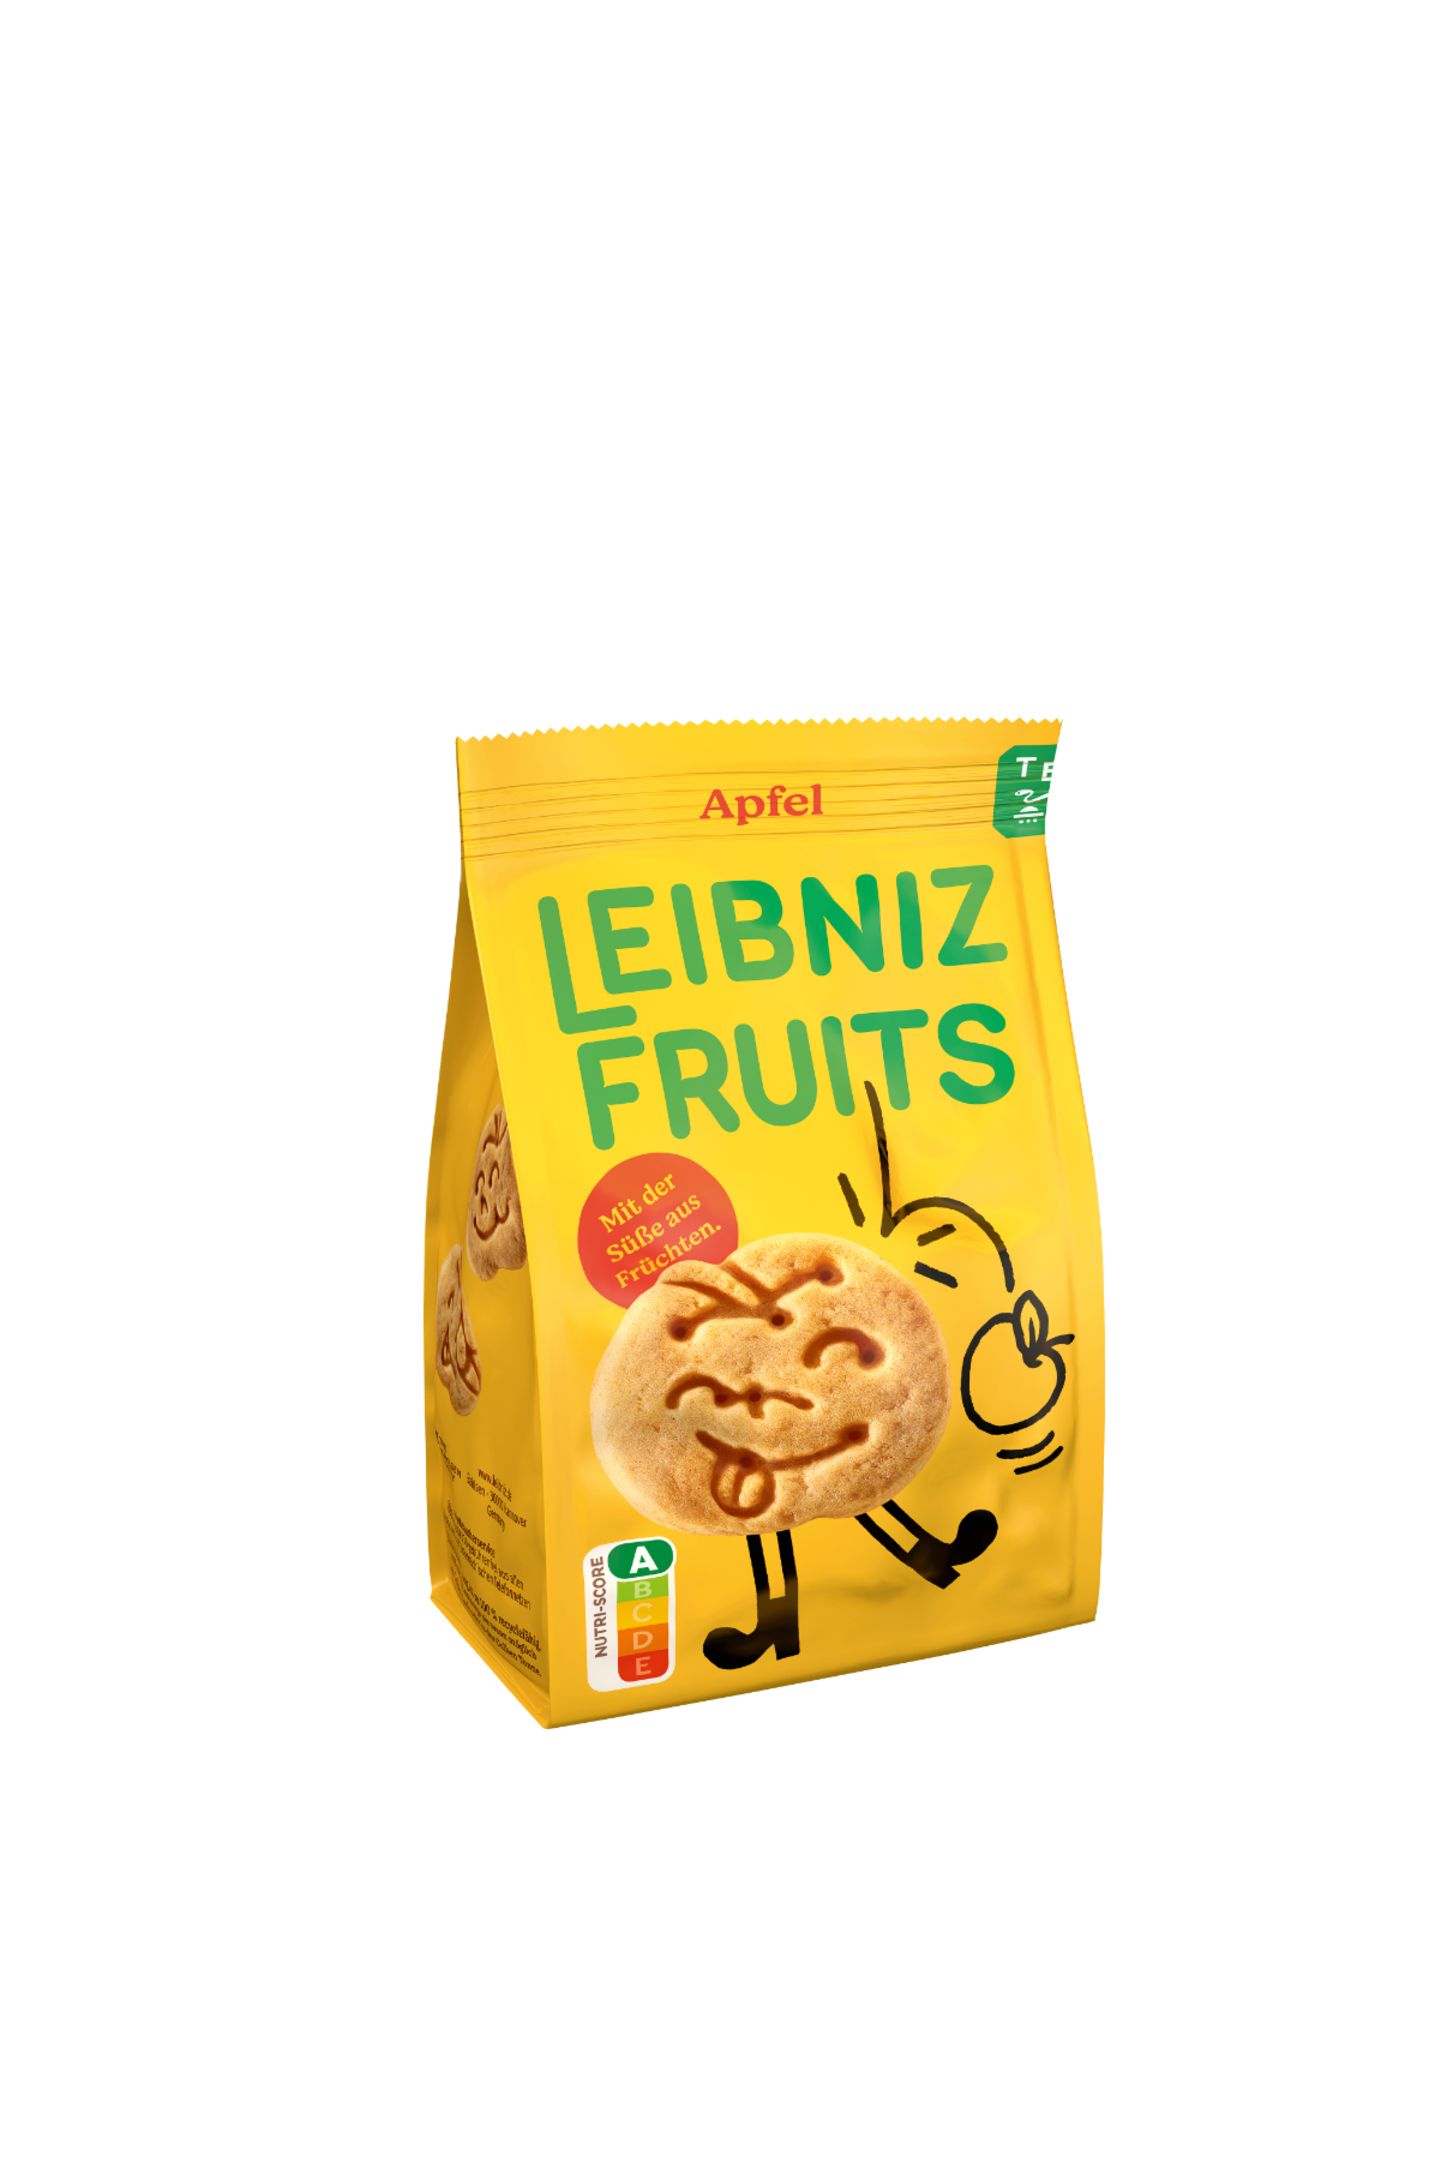 Ungetrübter Knabberspaß Premiere: Mit 100% Dinkelmehl, veganen Inhaltsstoffen und der Süße aus Früchten ist es das erste Produkt im Keksregal mit dem Nutriscore A. Leibniz Fruits, 1,80 Euro.